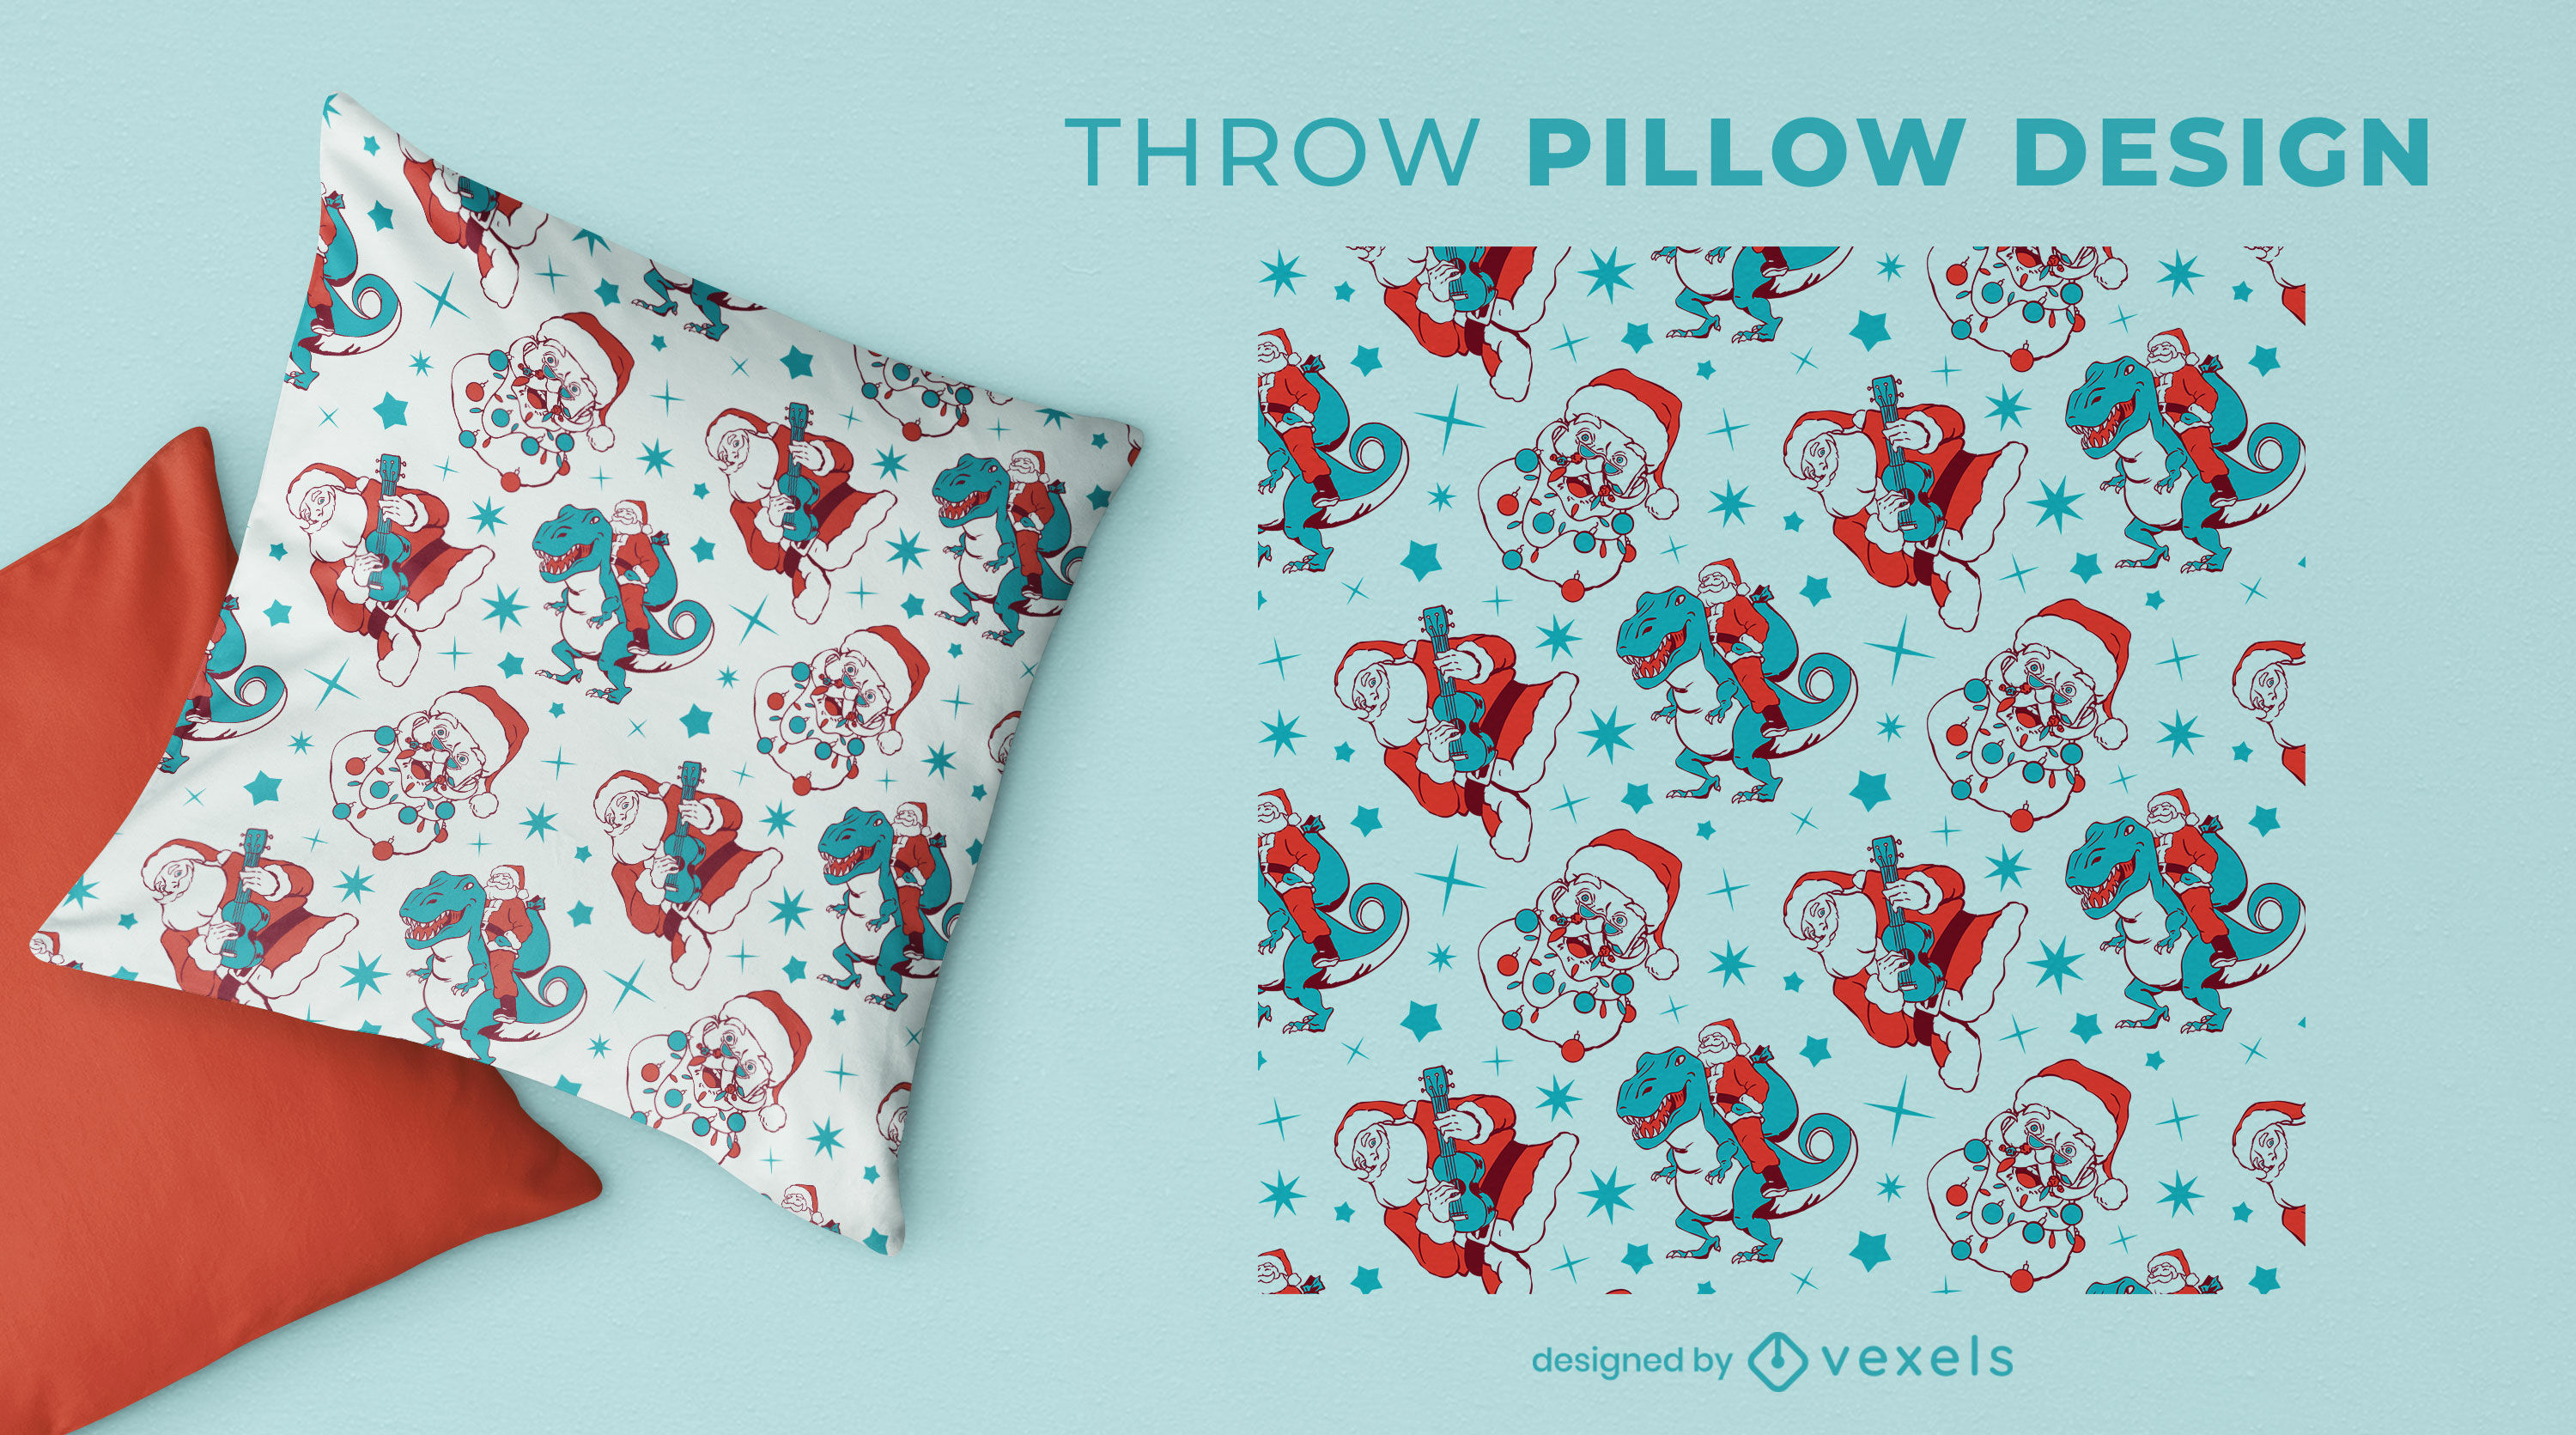 T-rex and Santa throw pillow design